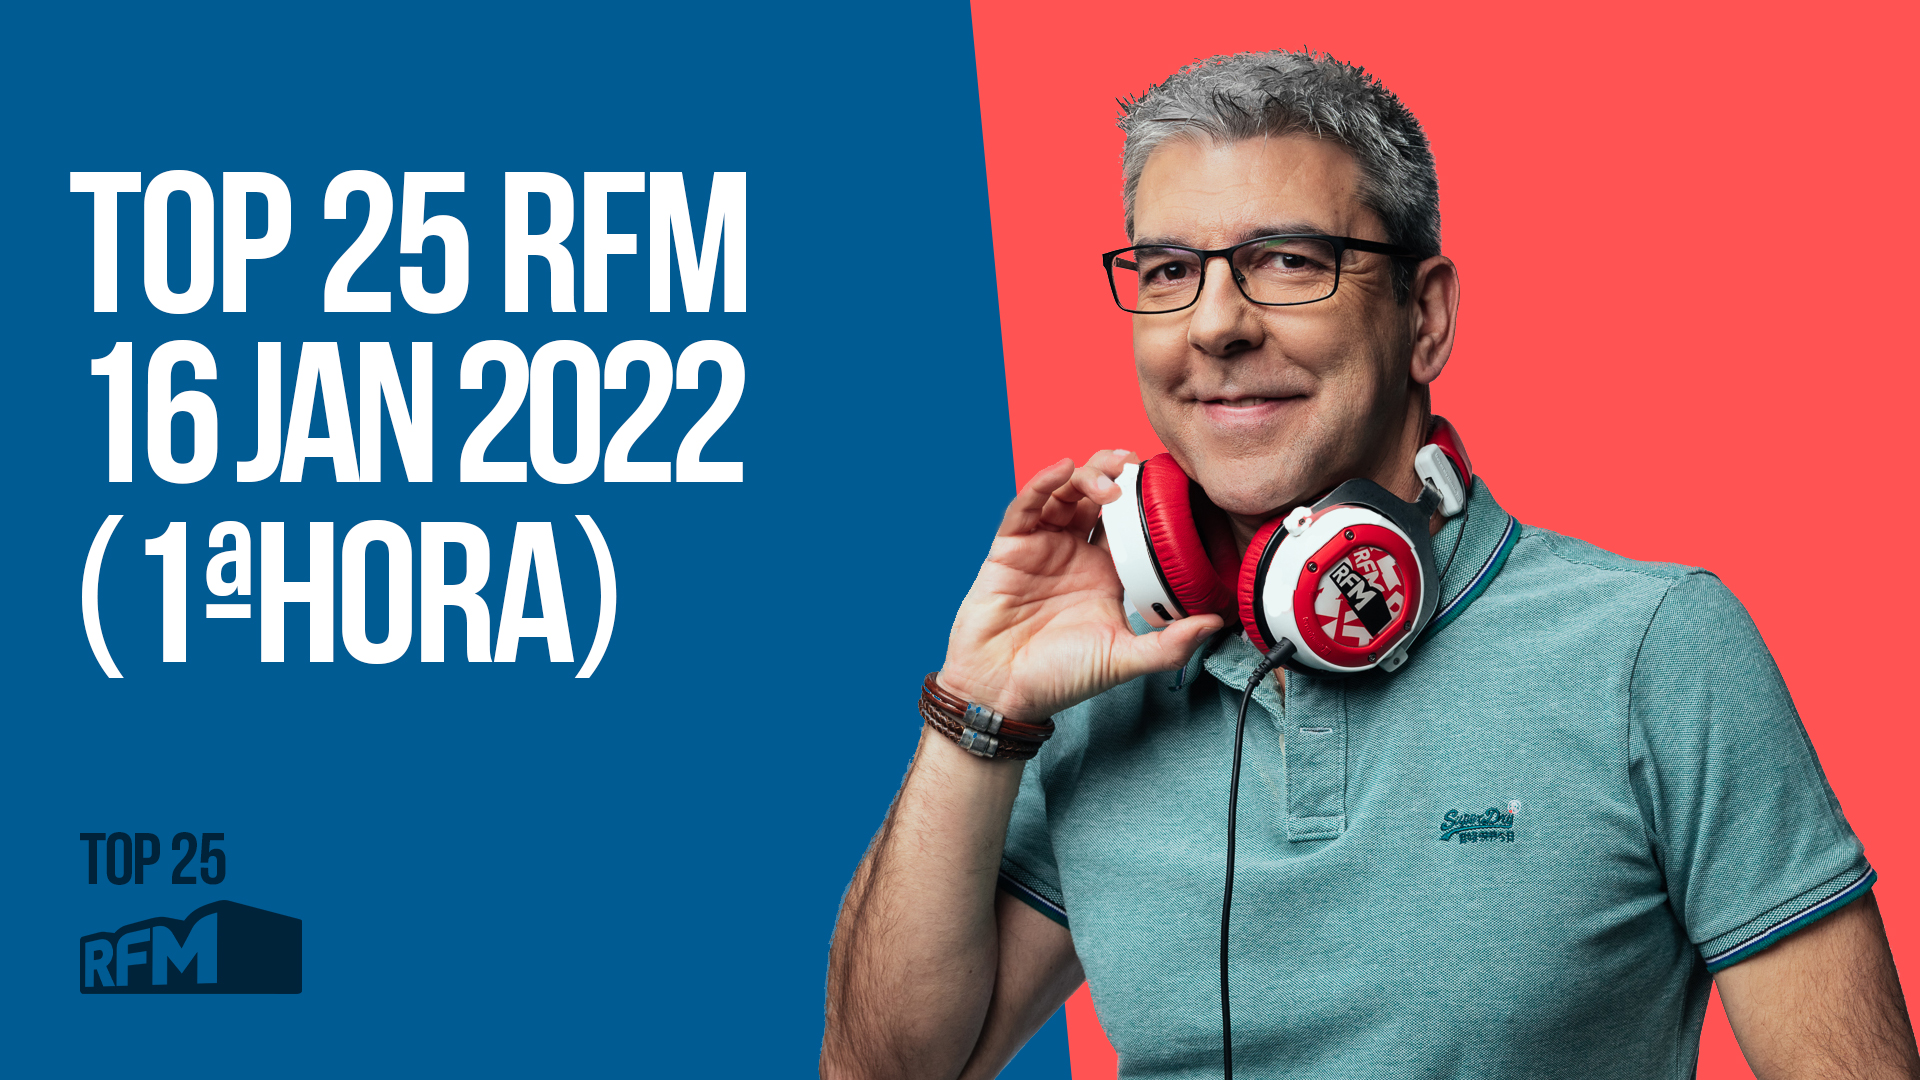 TOP 25 RFM 16 JANEIRO DE 2022 - 1ª HORA